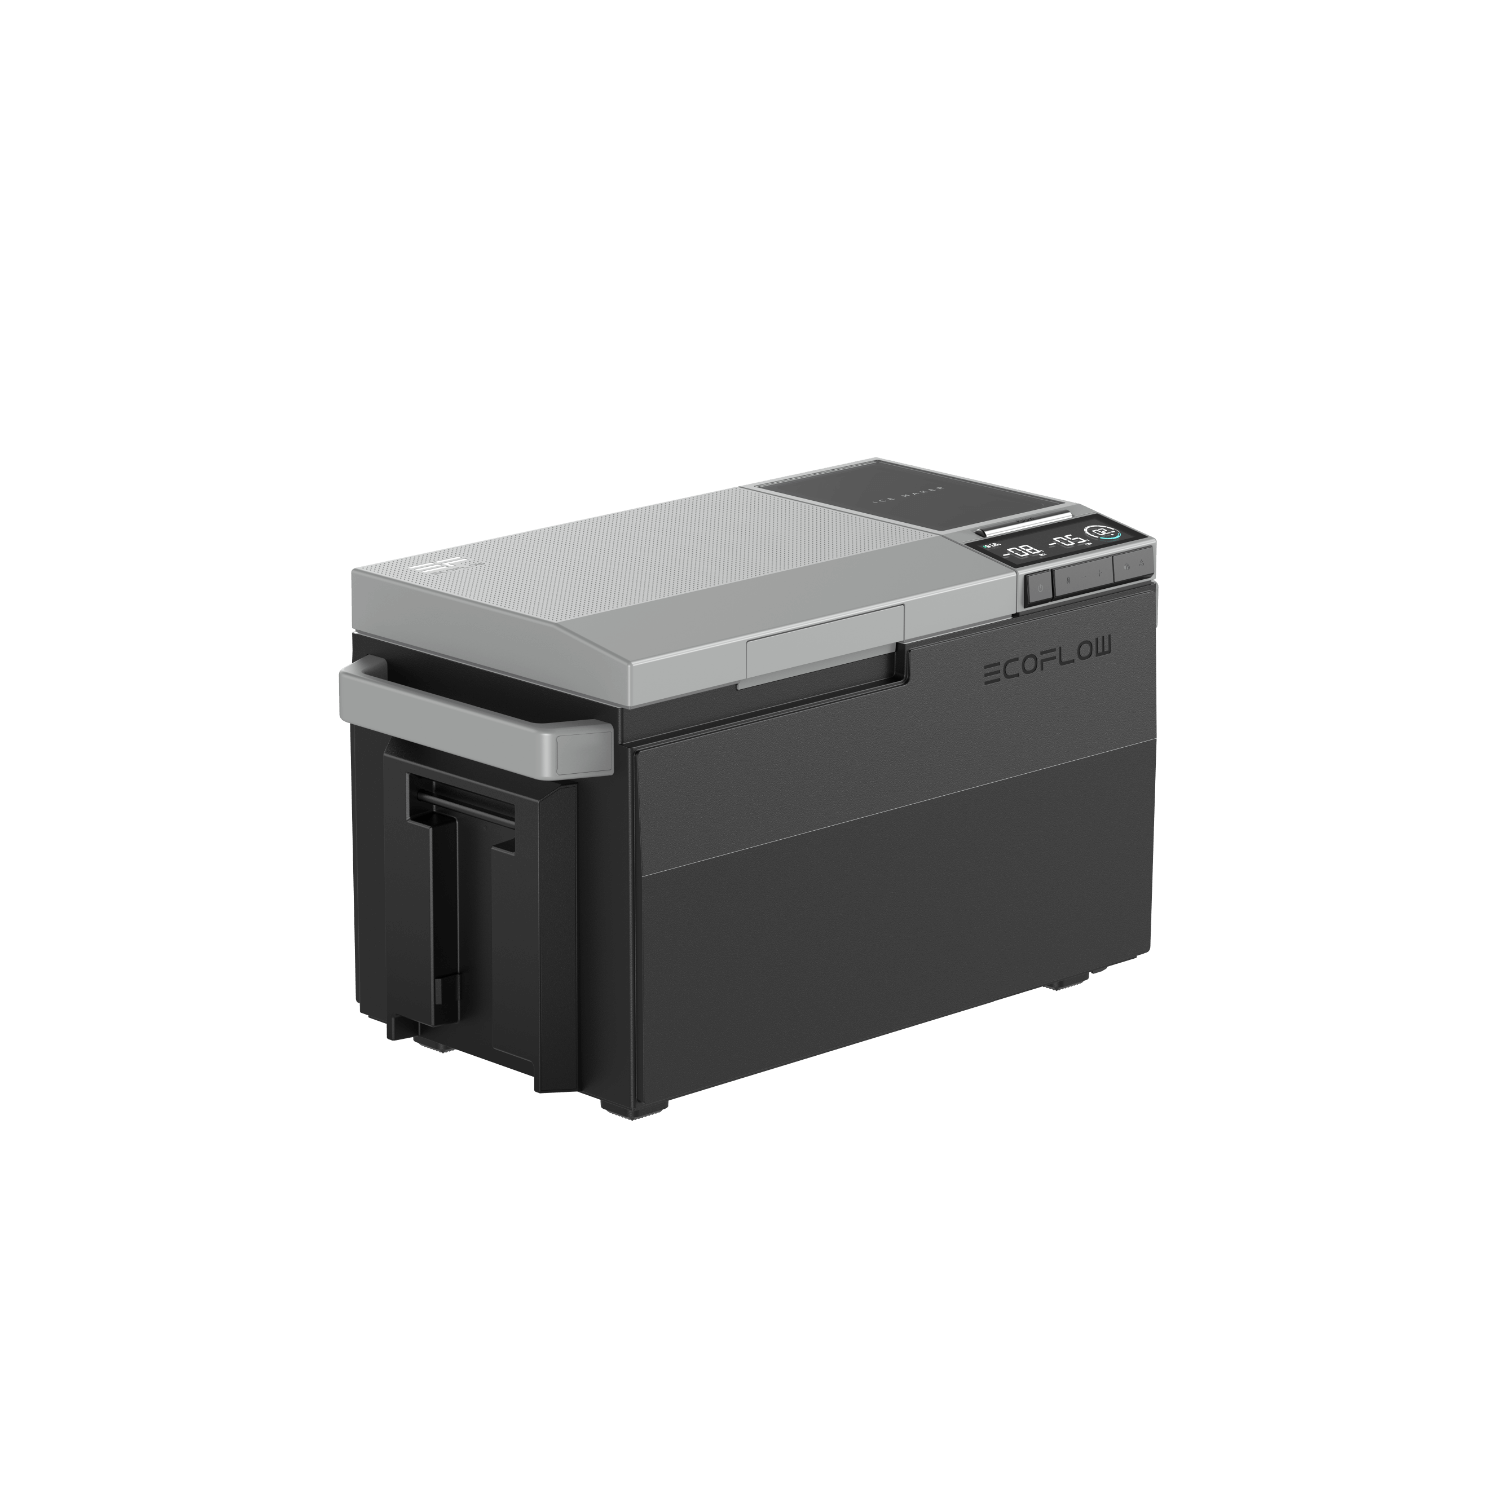 EcoFlow GLACIER Portable Refrigerator (Refurbished)